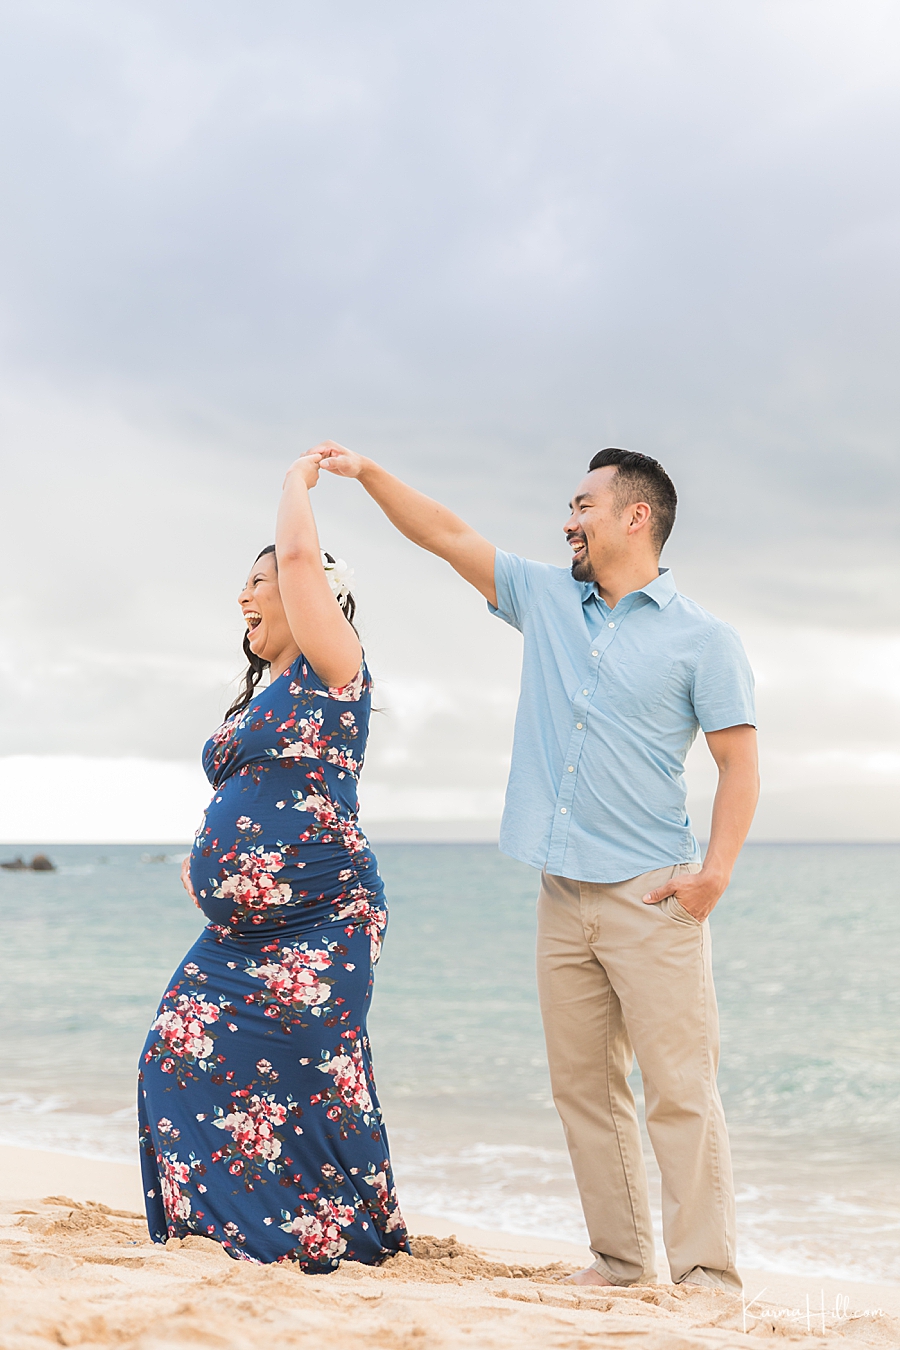 Honeymoon portraits in Maui, Hawaii
